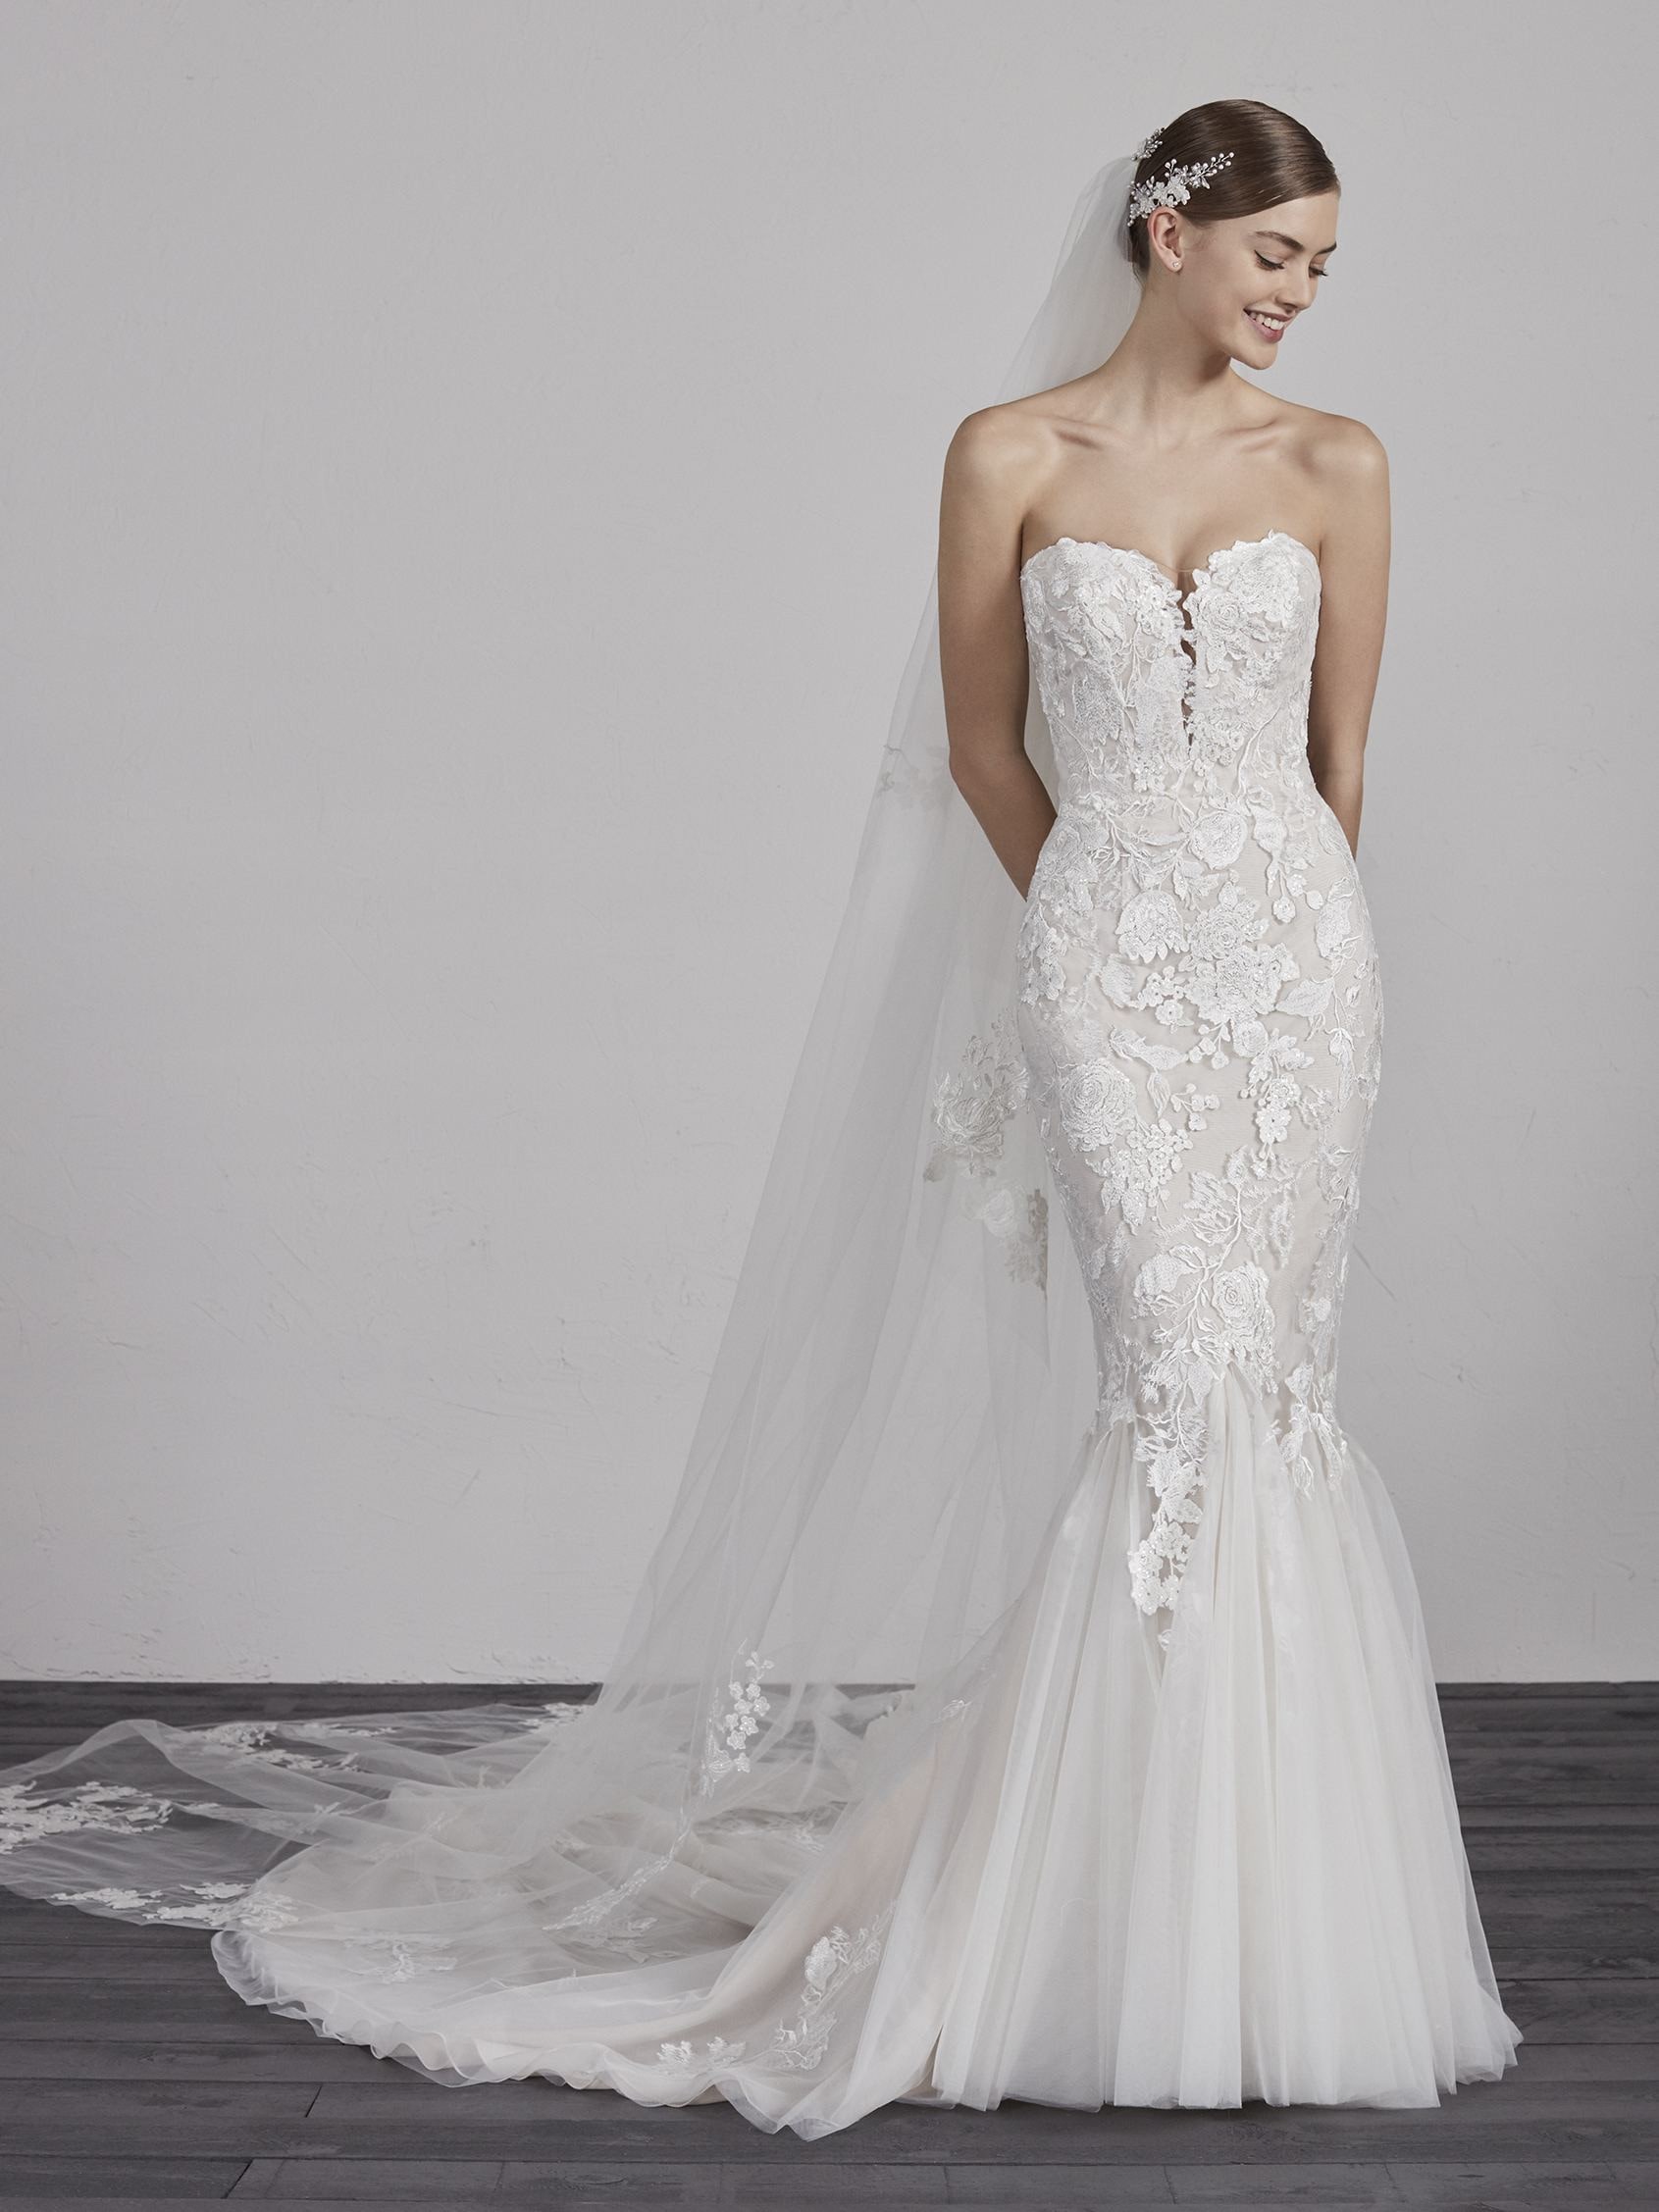 Ercilia Wedding Dress - Wedding Atelier NYC Pronovias - New York